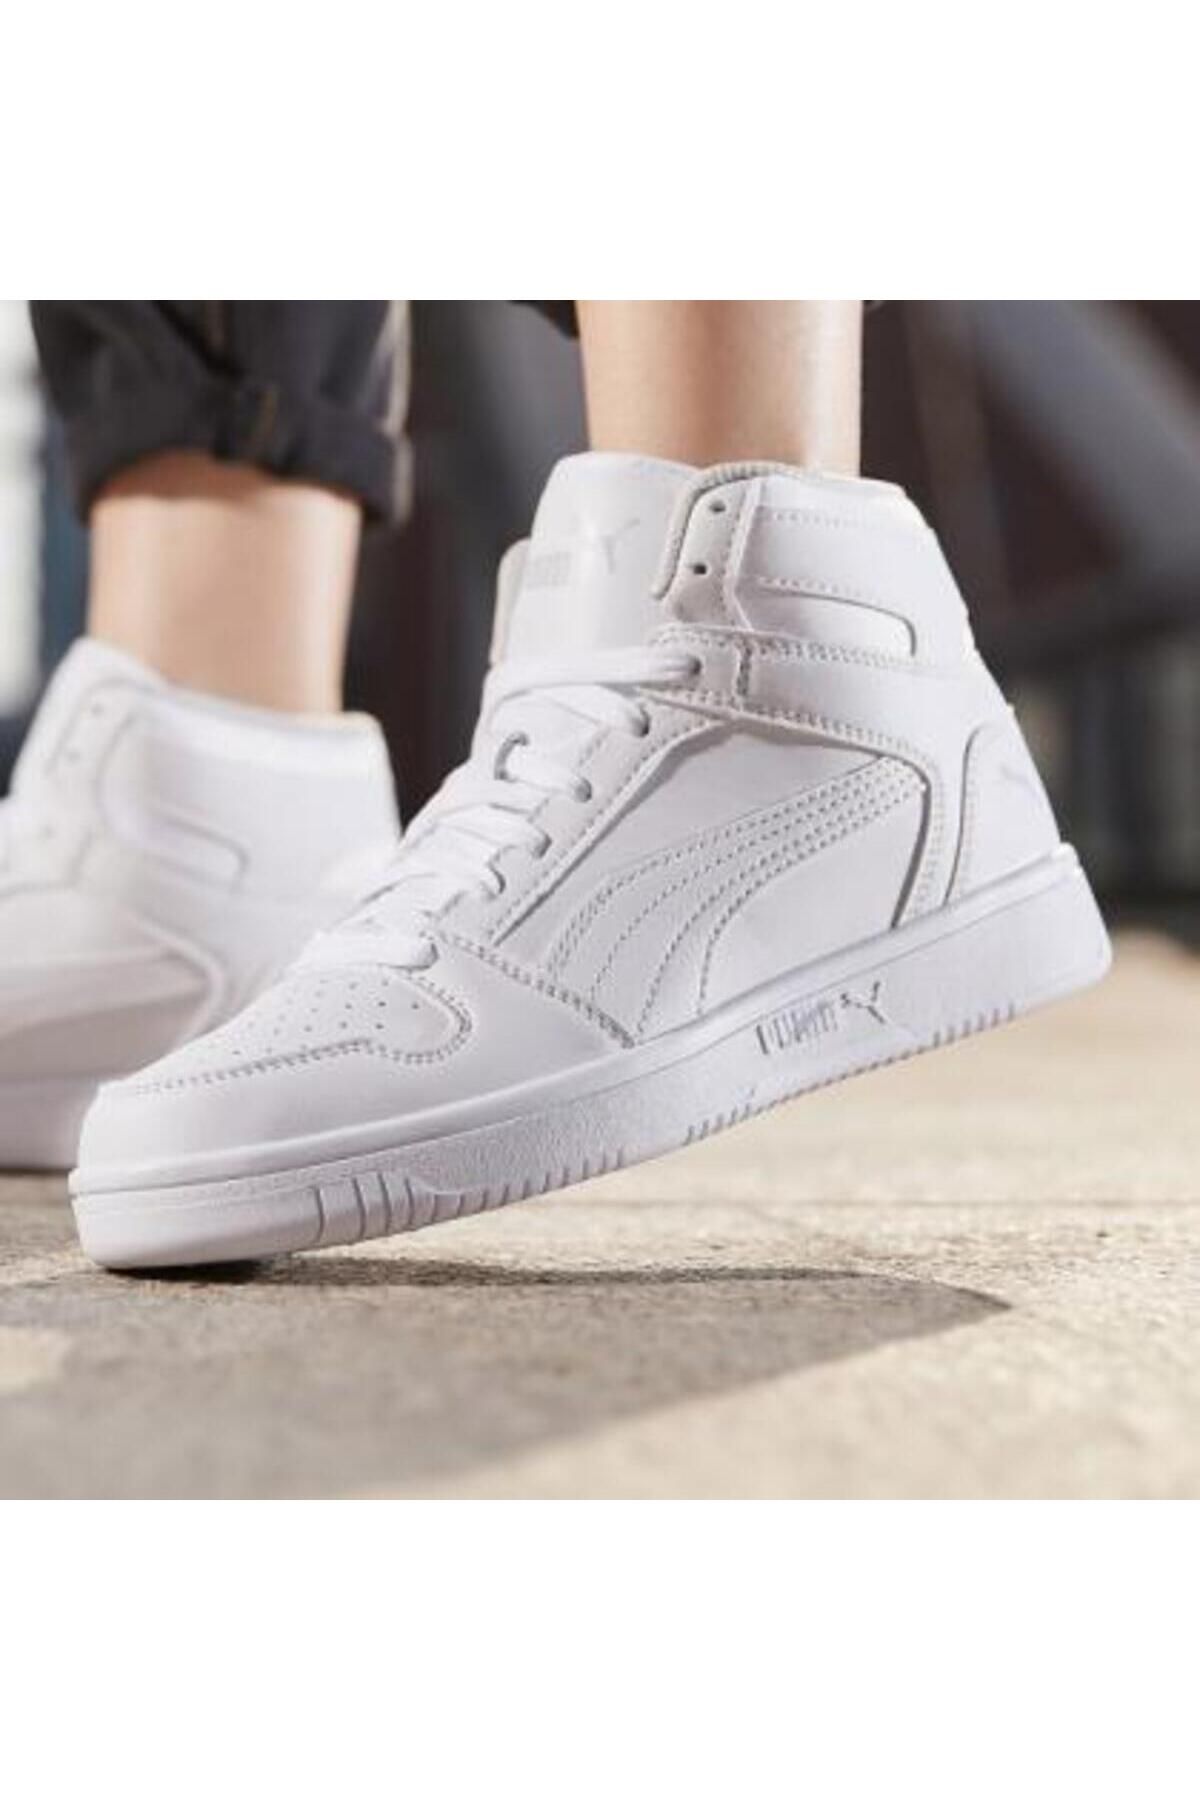 Puma Rebound Hi Kadın Beyaz Bilekli Sneaker Spor Bot Ayakkabı